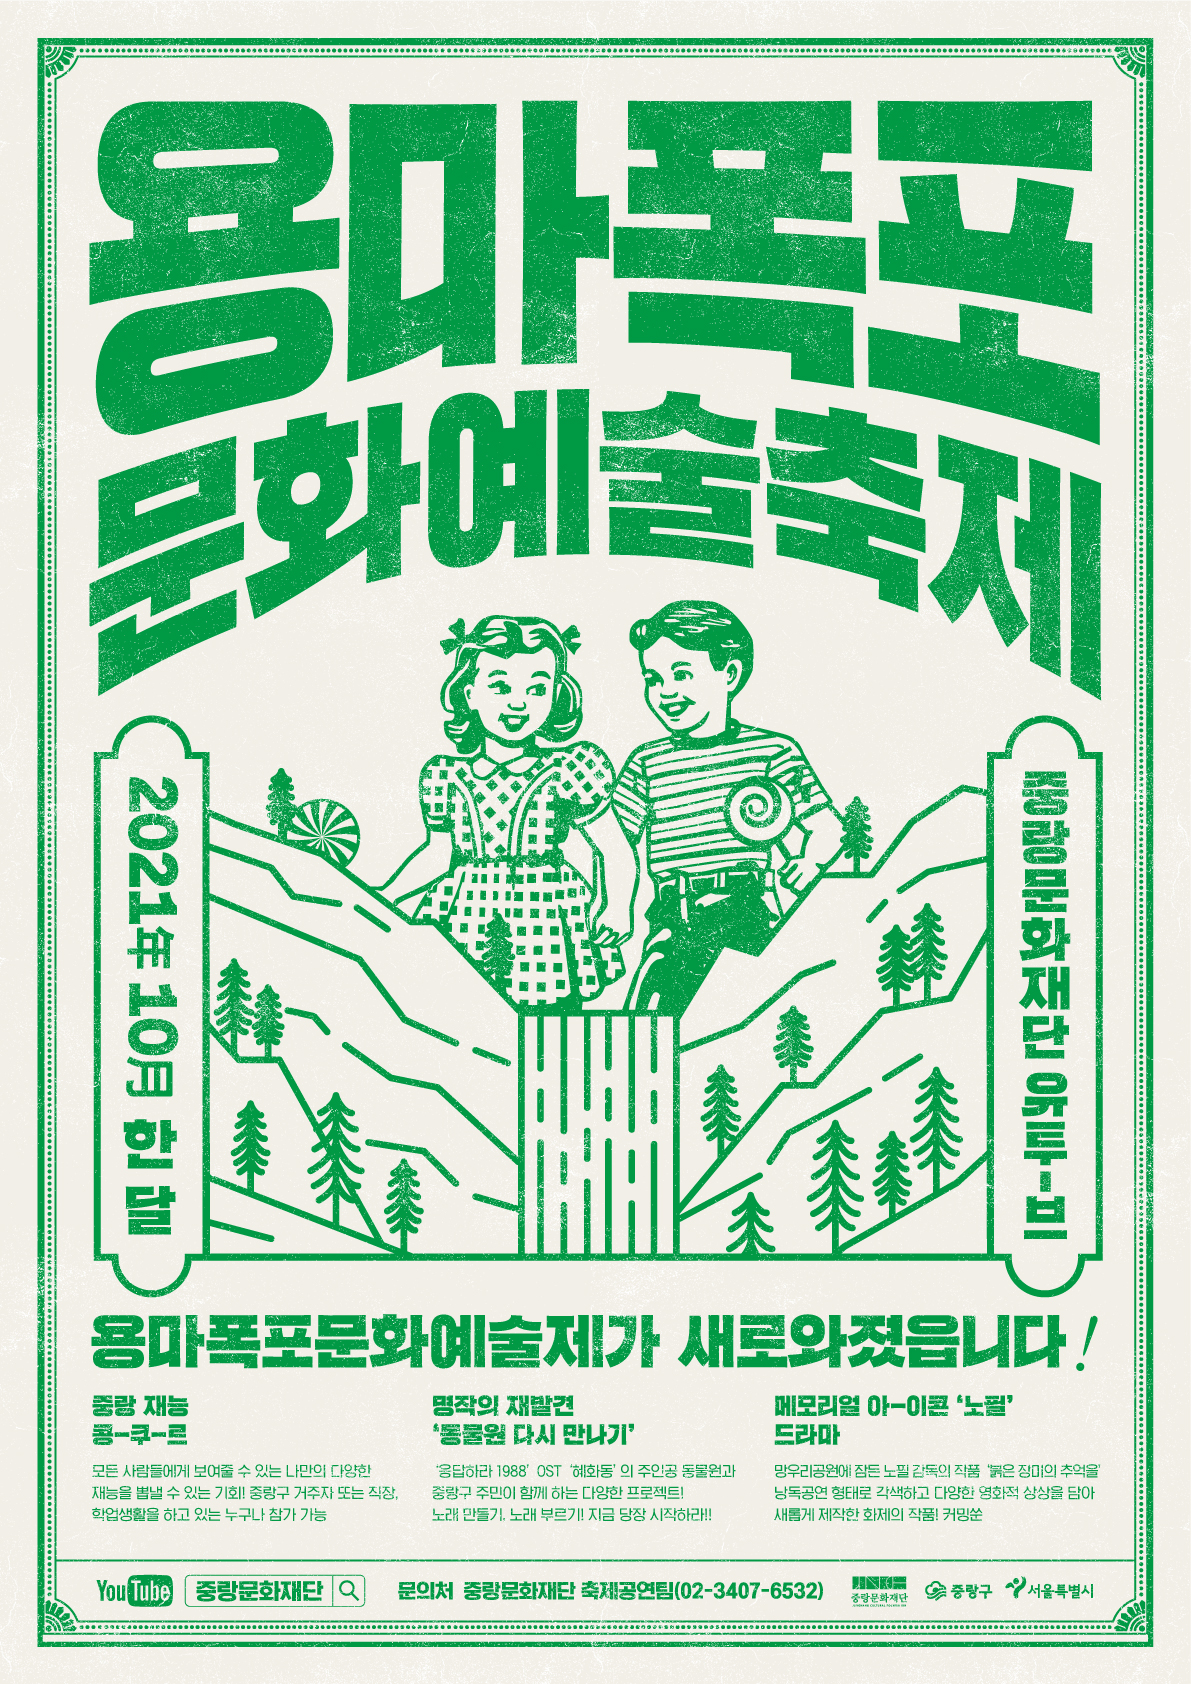  2021용마폭포문화예술축제 공모 포스터.jpg